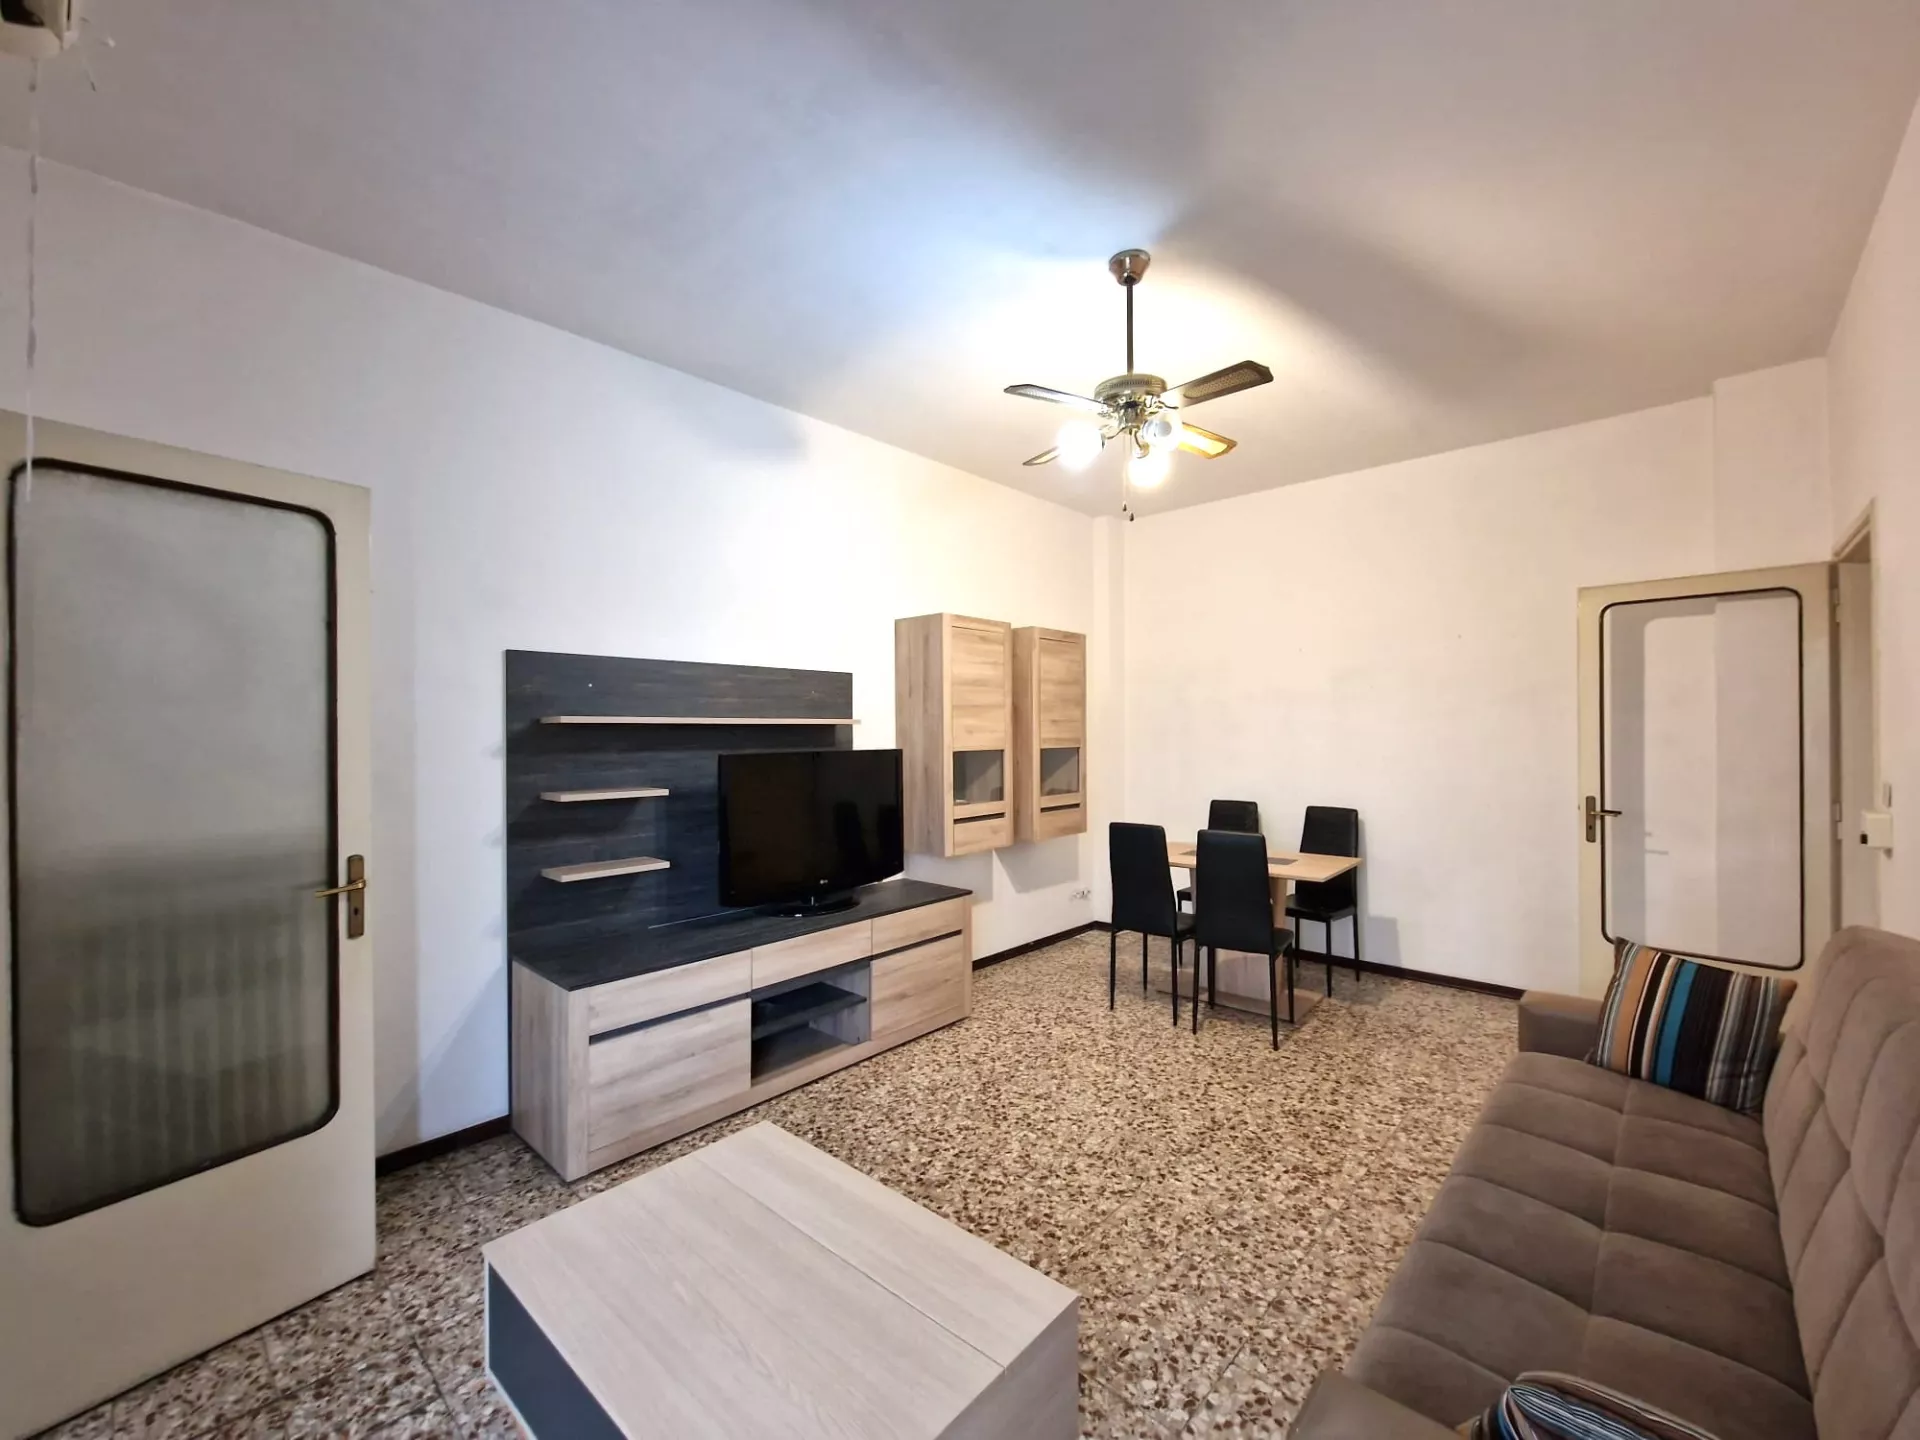 Immagine per Appartamento in vendita a Vercelli corso Italia 79